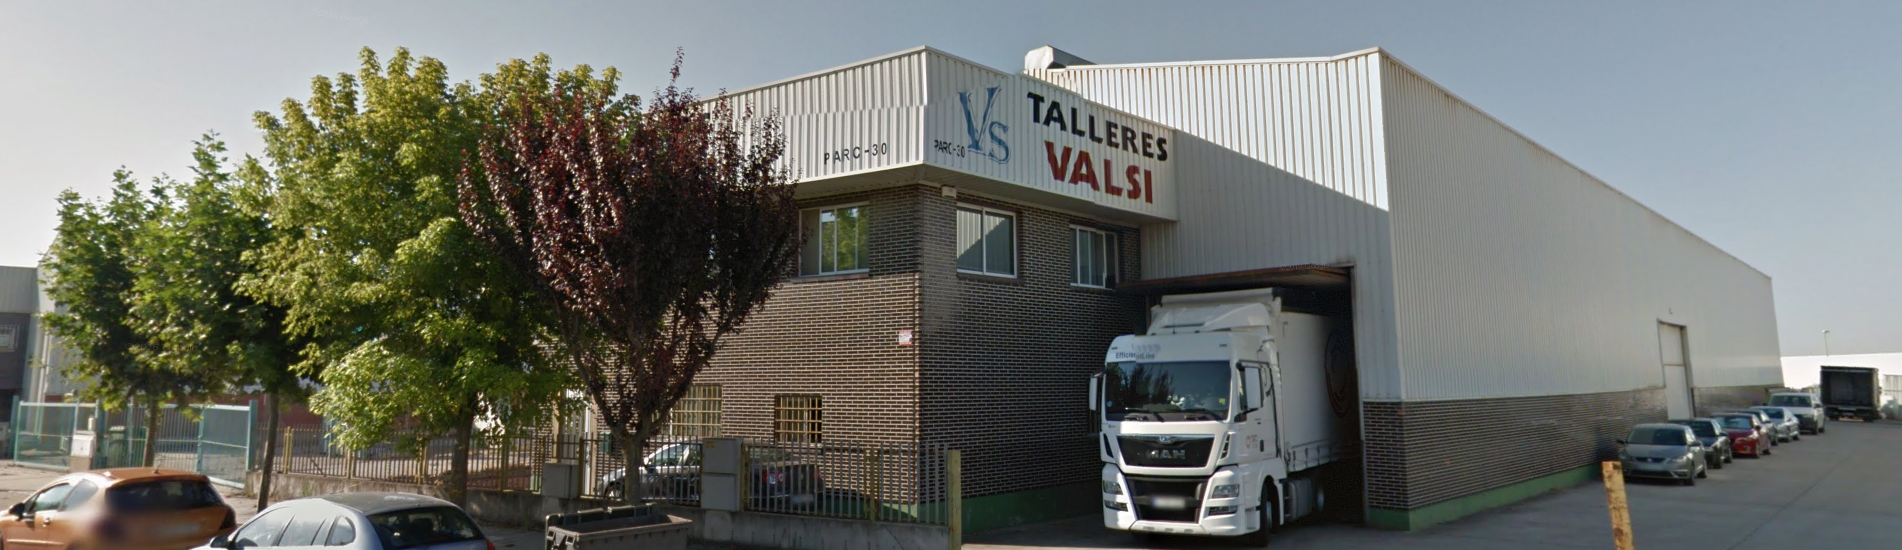 Talleres Valsi Calderería industrial en Valladolid